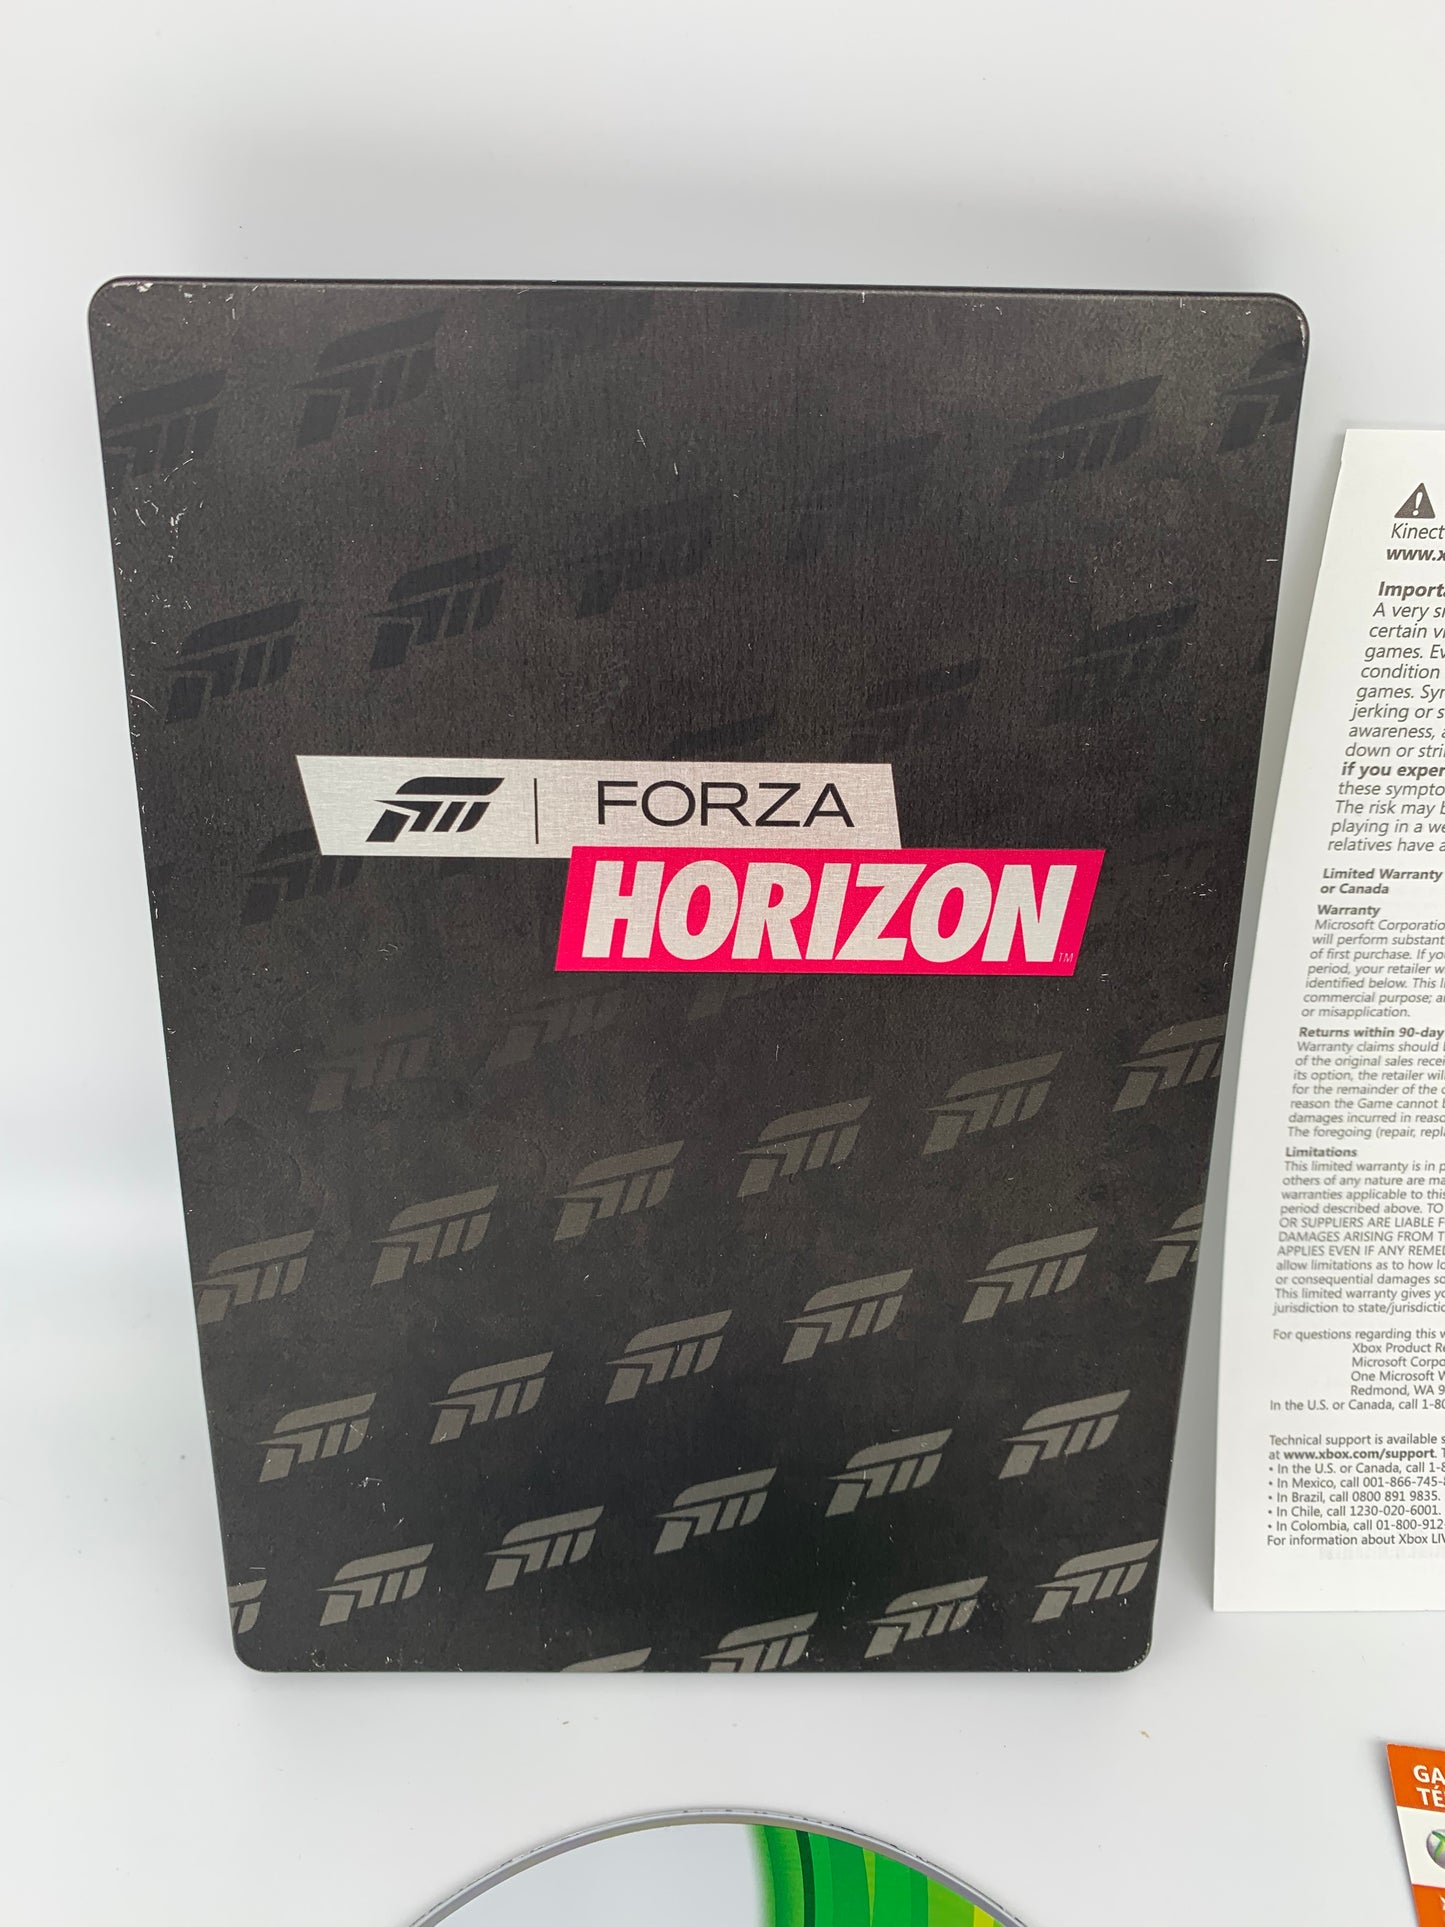 MiCROSOFT XBOX 360 | FORZA HORiZON | COLLECTORS EDiTiON